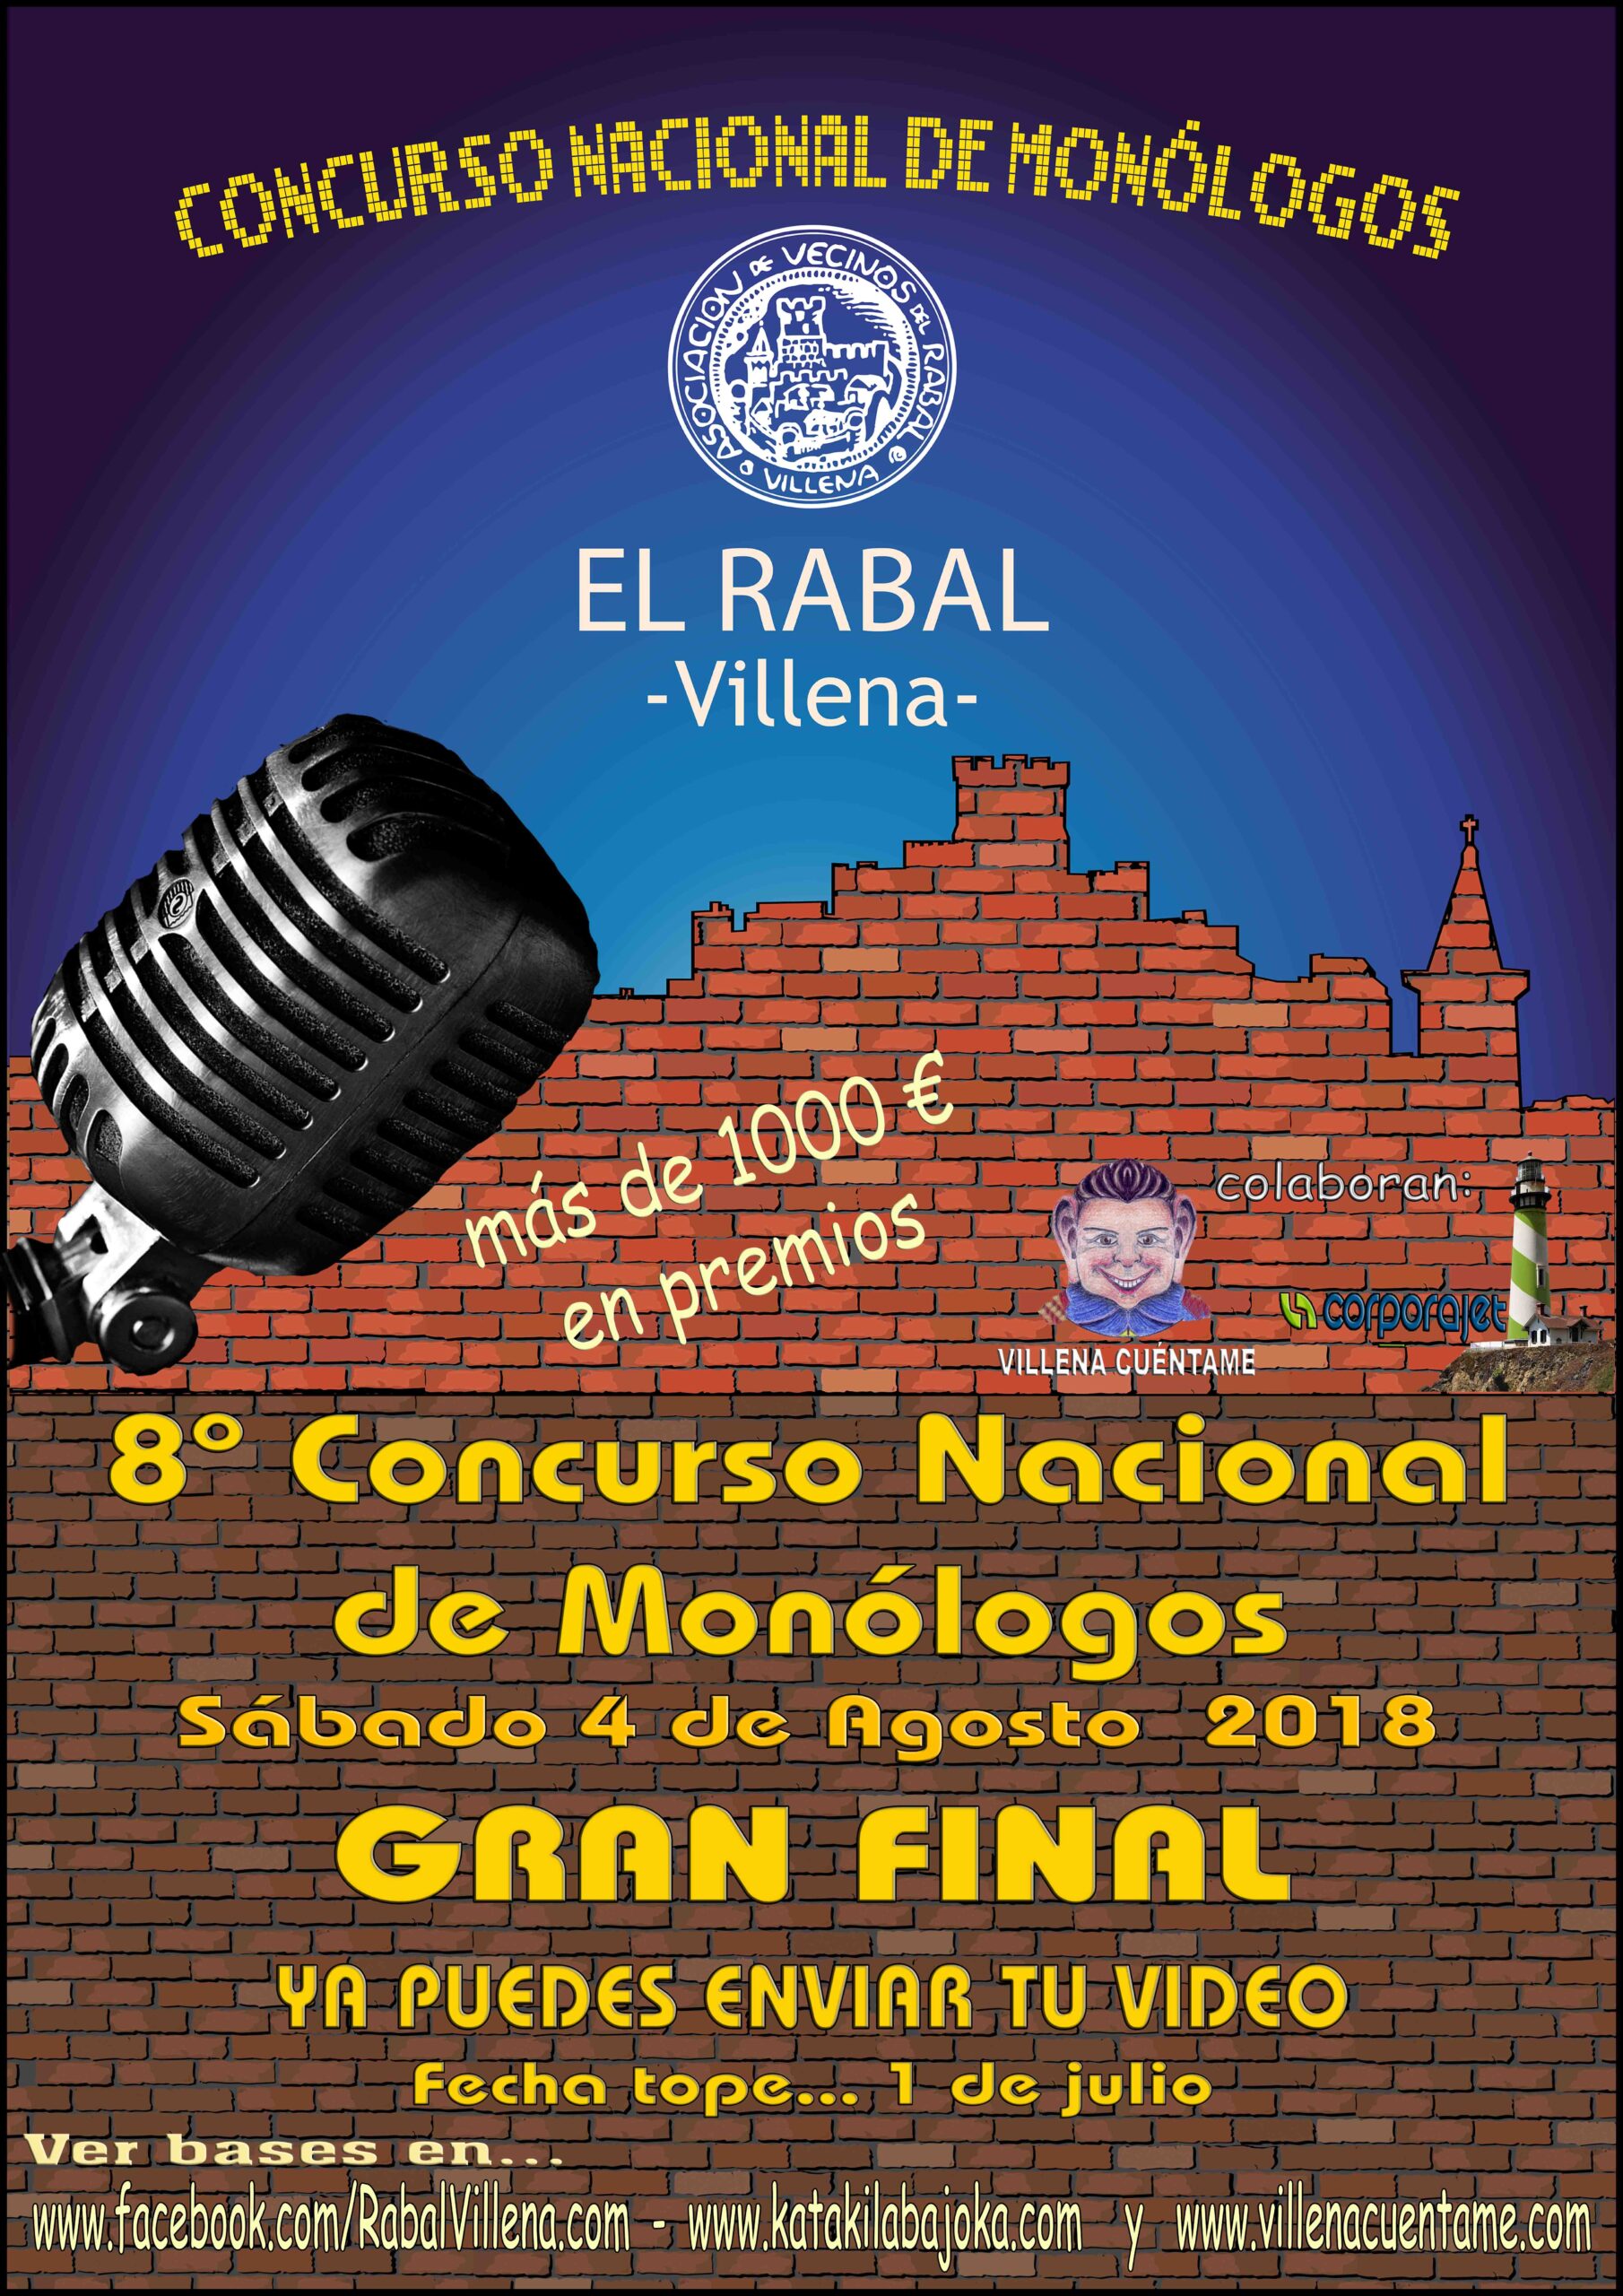 El Rabal prepara el concurso de monónologos y la cena en el Castillo